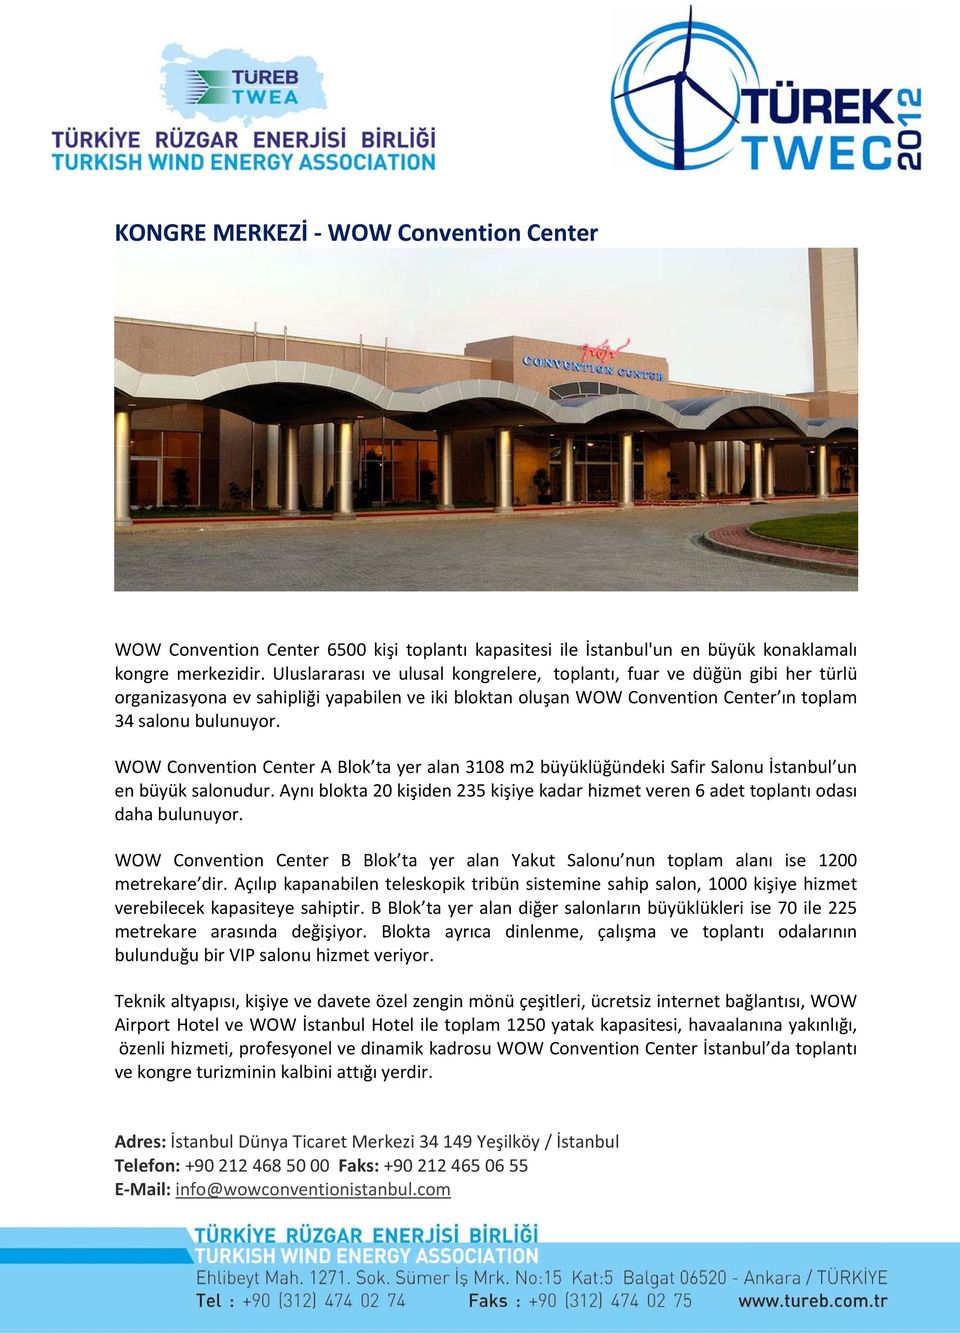 WOW Convention Center A Blok ta yer alan 3108 m2 büyüklüğündeki Safir Salonu İstanbul un en büyük salonudur. Aynı blokta 20 kişiden 235 kişiye kadar hizmet veren 6 adet toplantı odası daha bulunuyor.